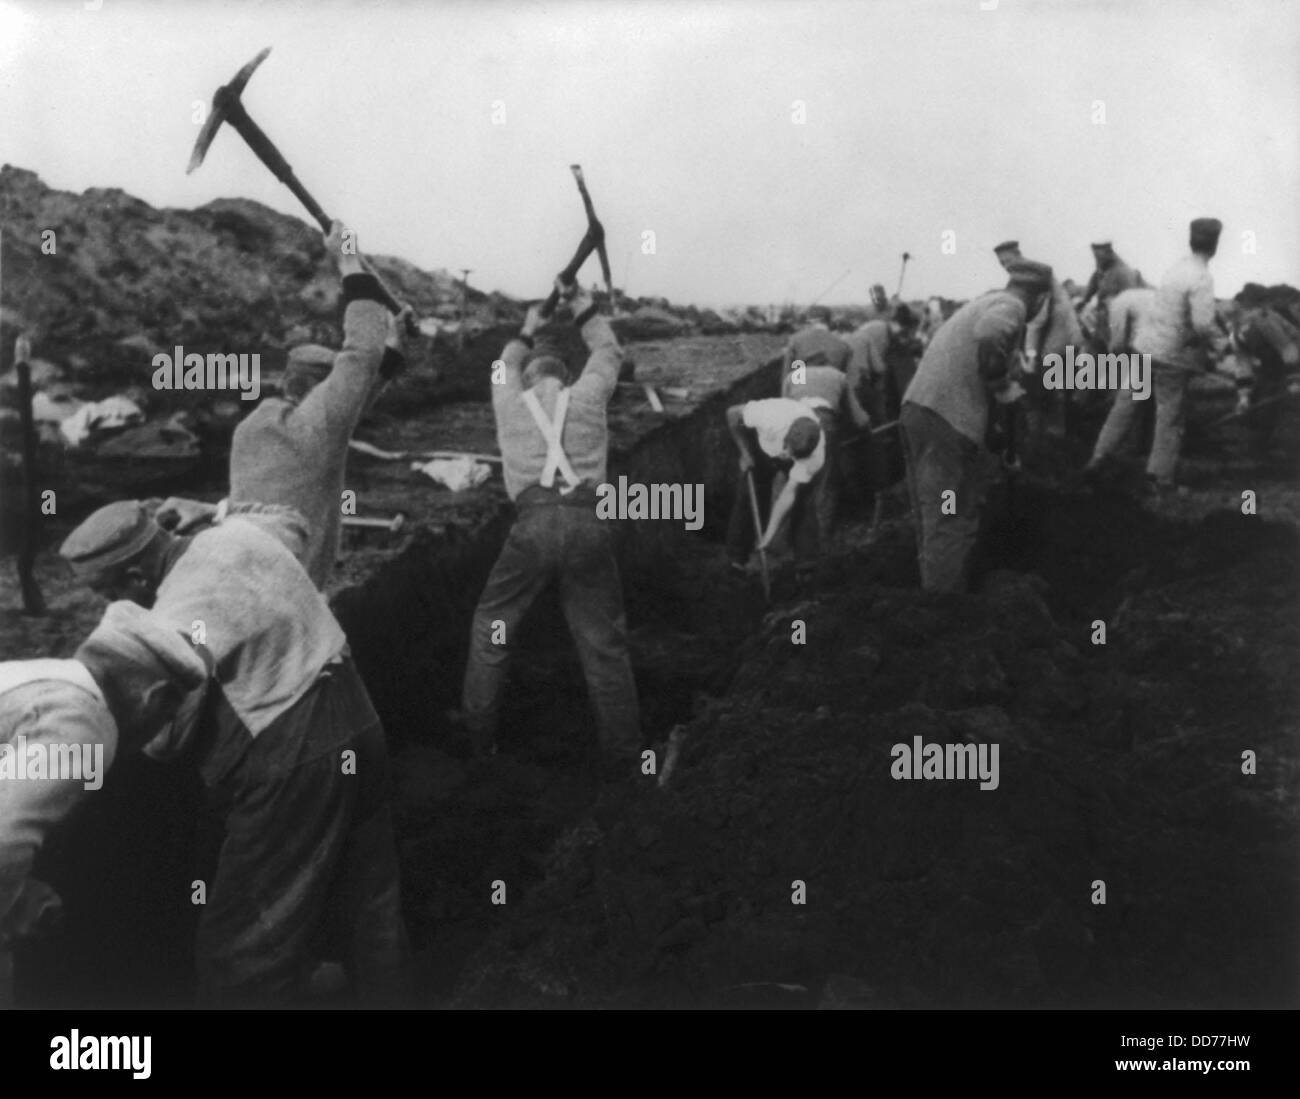 Deutsche politische Gefangene in harter Arbeit im Jahre 1935. In ein sibirisches Arbeitslager im Emsland Deutschlands, Gefangene mit Tipps und Stockfoto